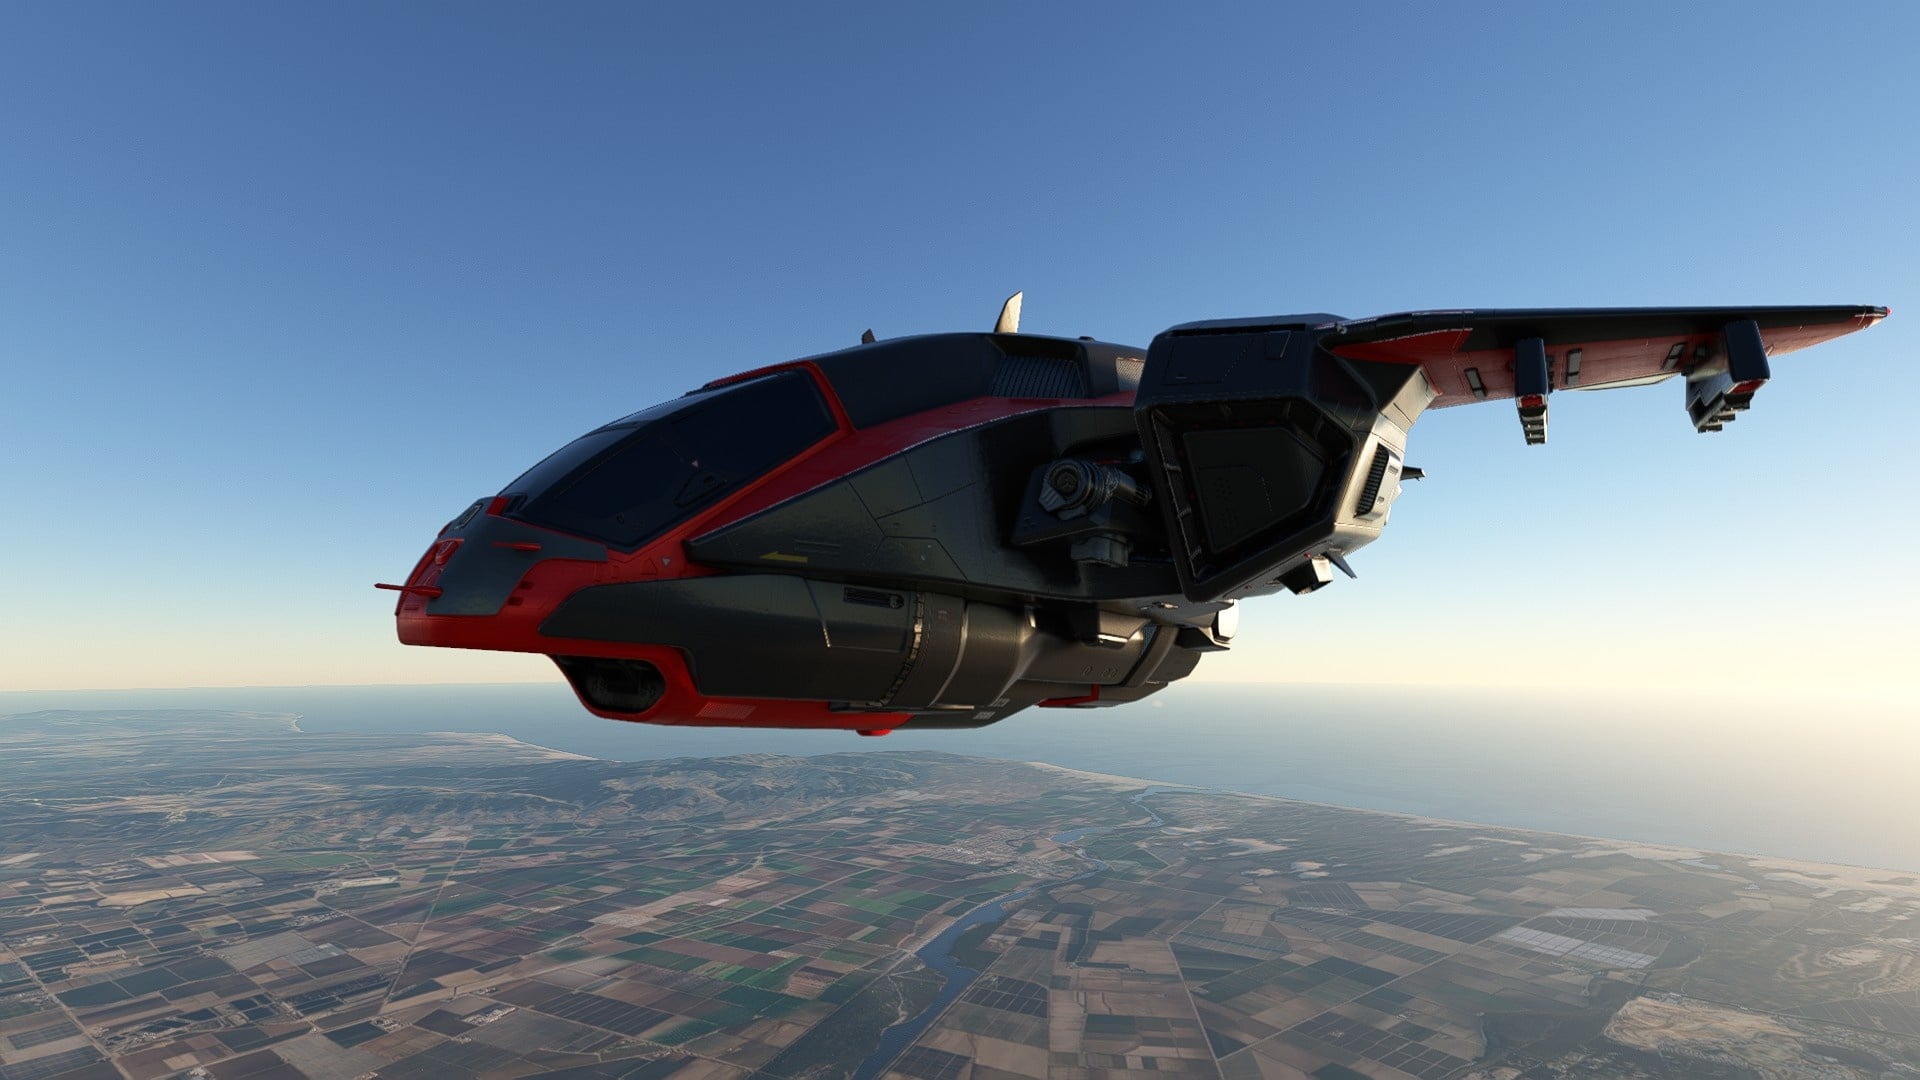 (De Misriah Armory D77 TC Pelican komt uit de Halo-serie van Microsoft en is sinds kort in verschillende liveries beschikbaar als gratis DLC op de marktplaats van Flight Simulator)